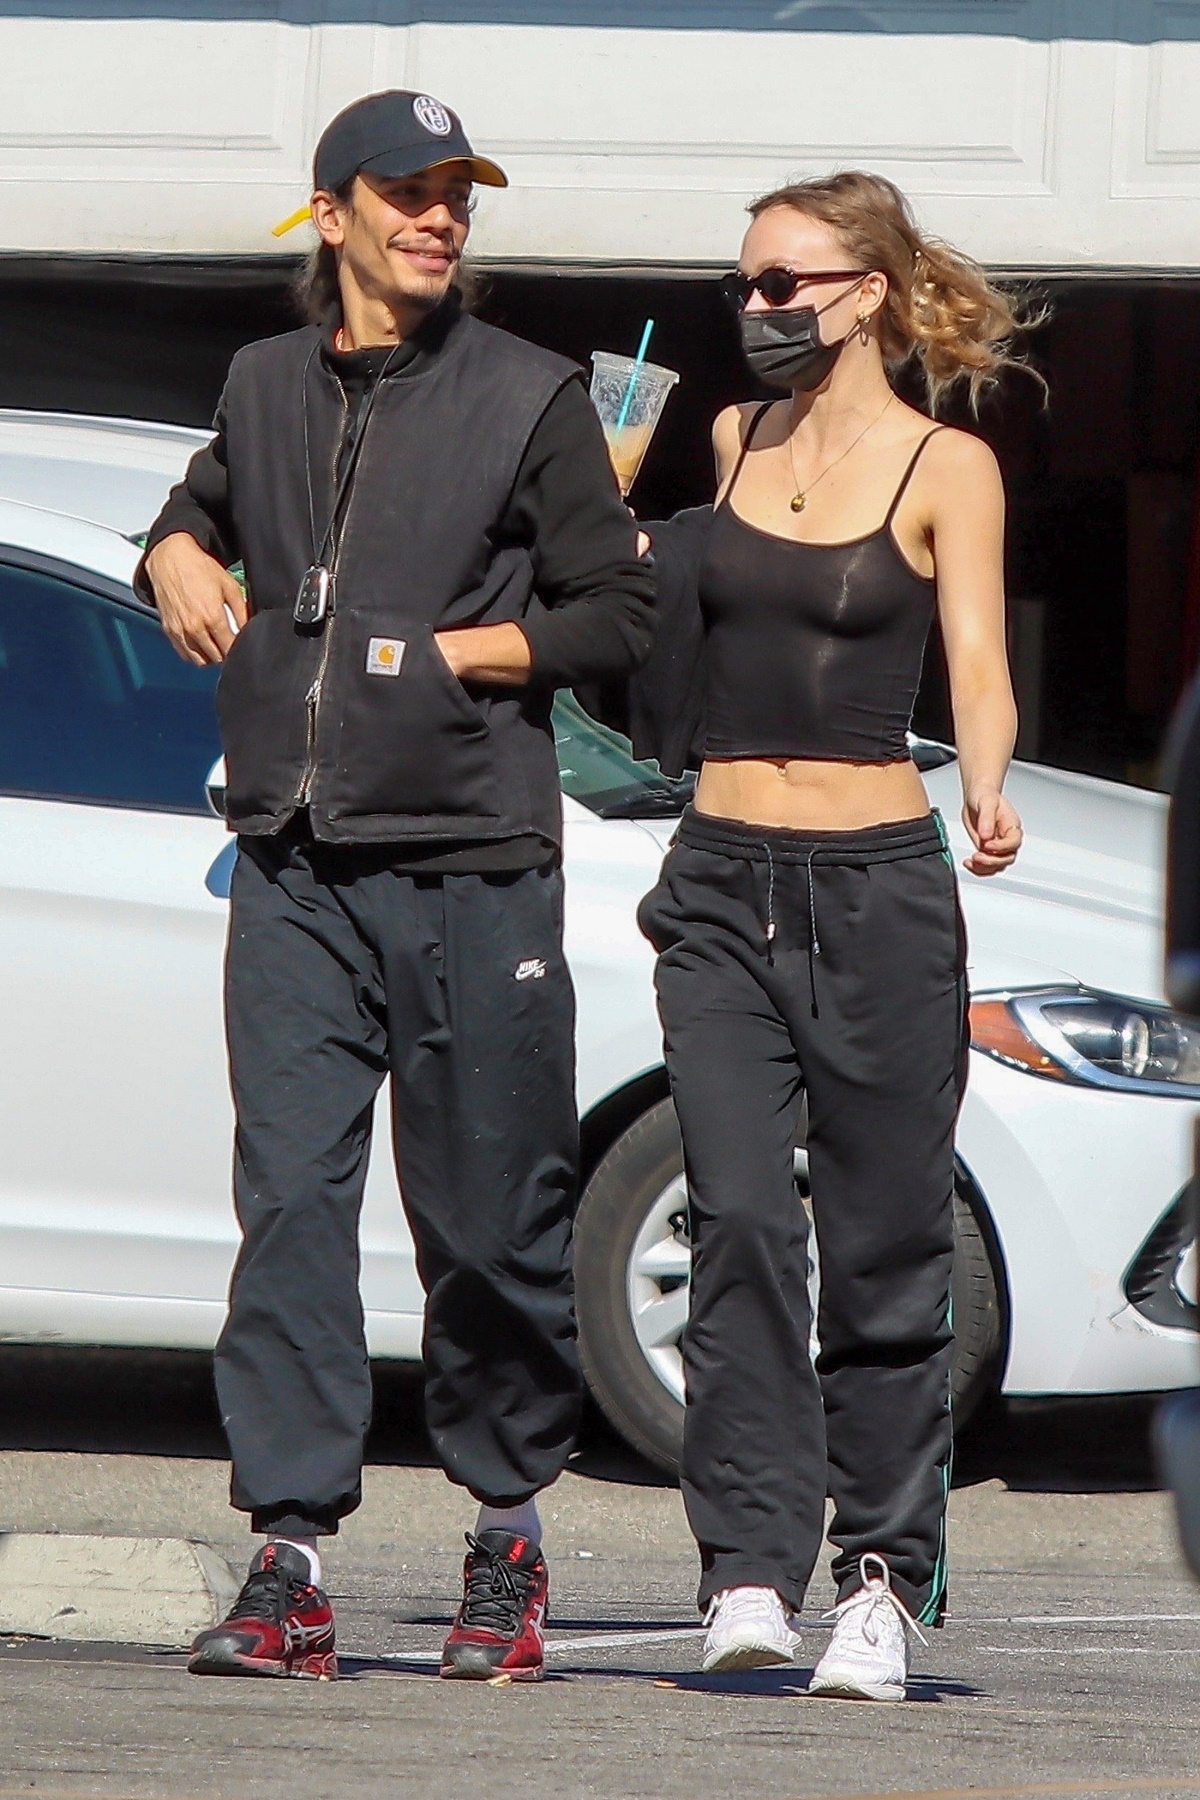 Hija de Johnny Depp cautiva con minifalda a cuadros en París - Vive USA